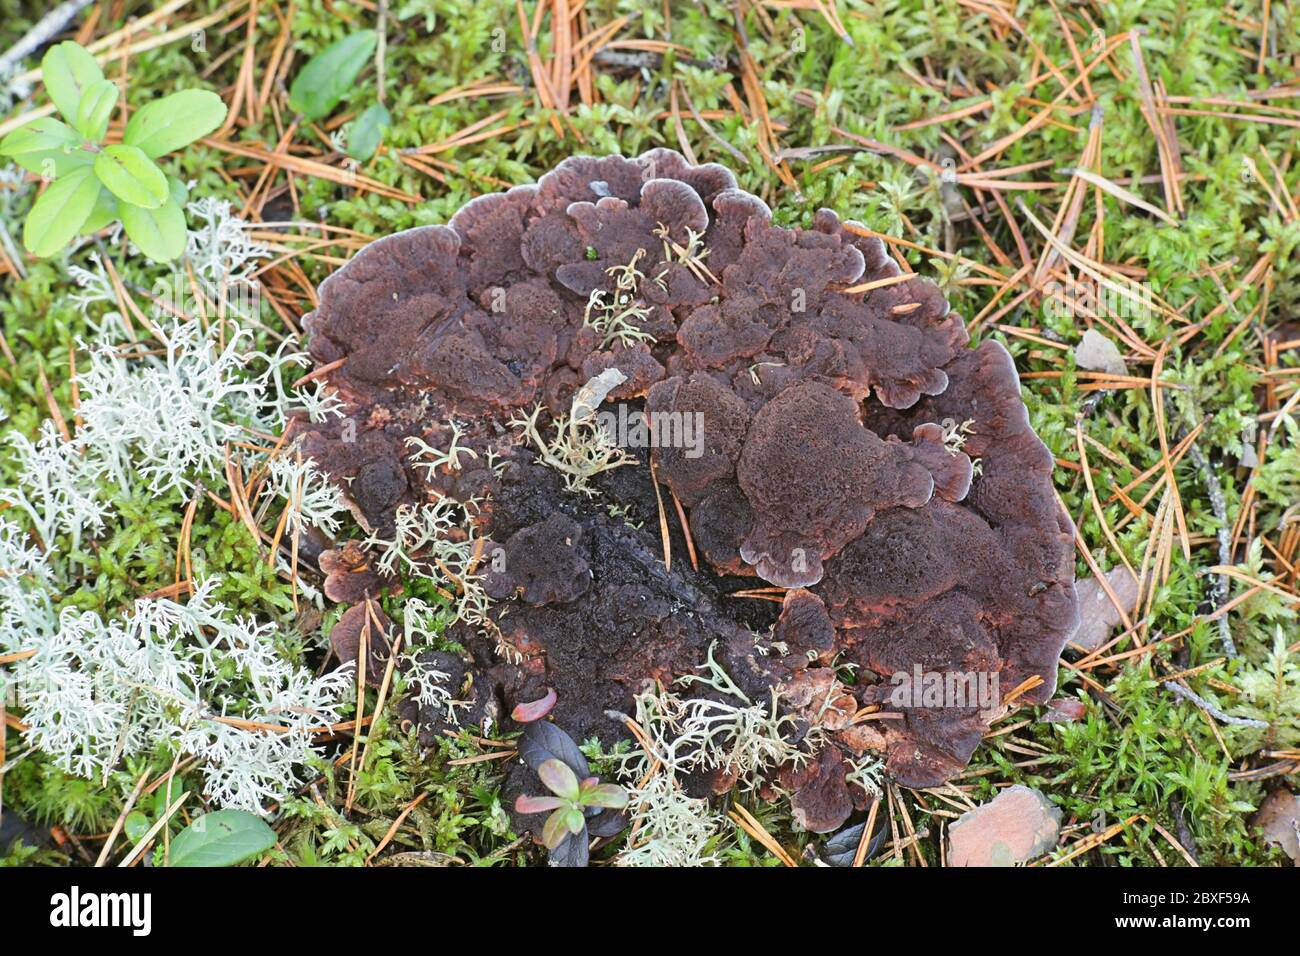 Hydnellum ferrugineum, conocido como el diente de mezaly o el hongo de la columna corky marrón rojizo, hongo silvestre de Finlandia Foto de stock